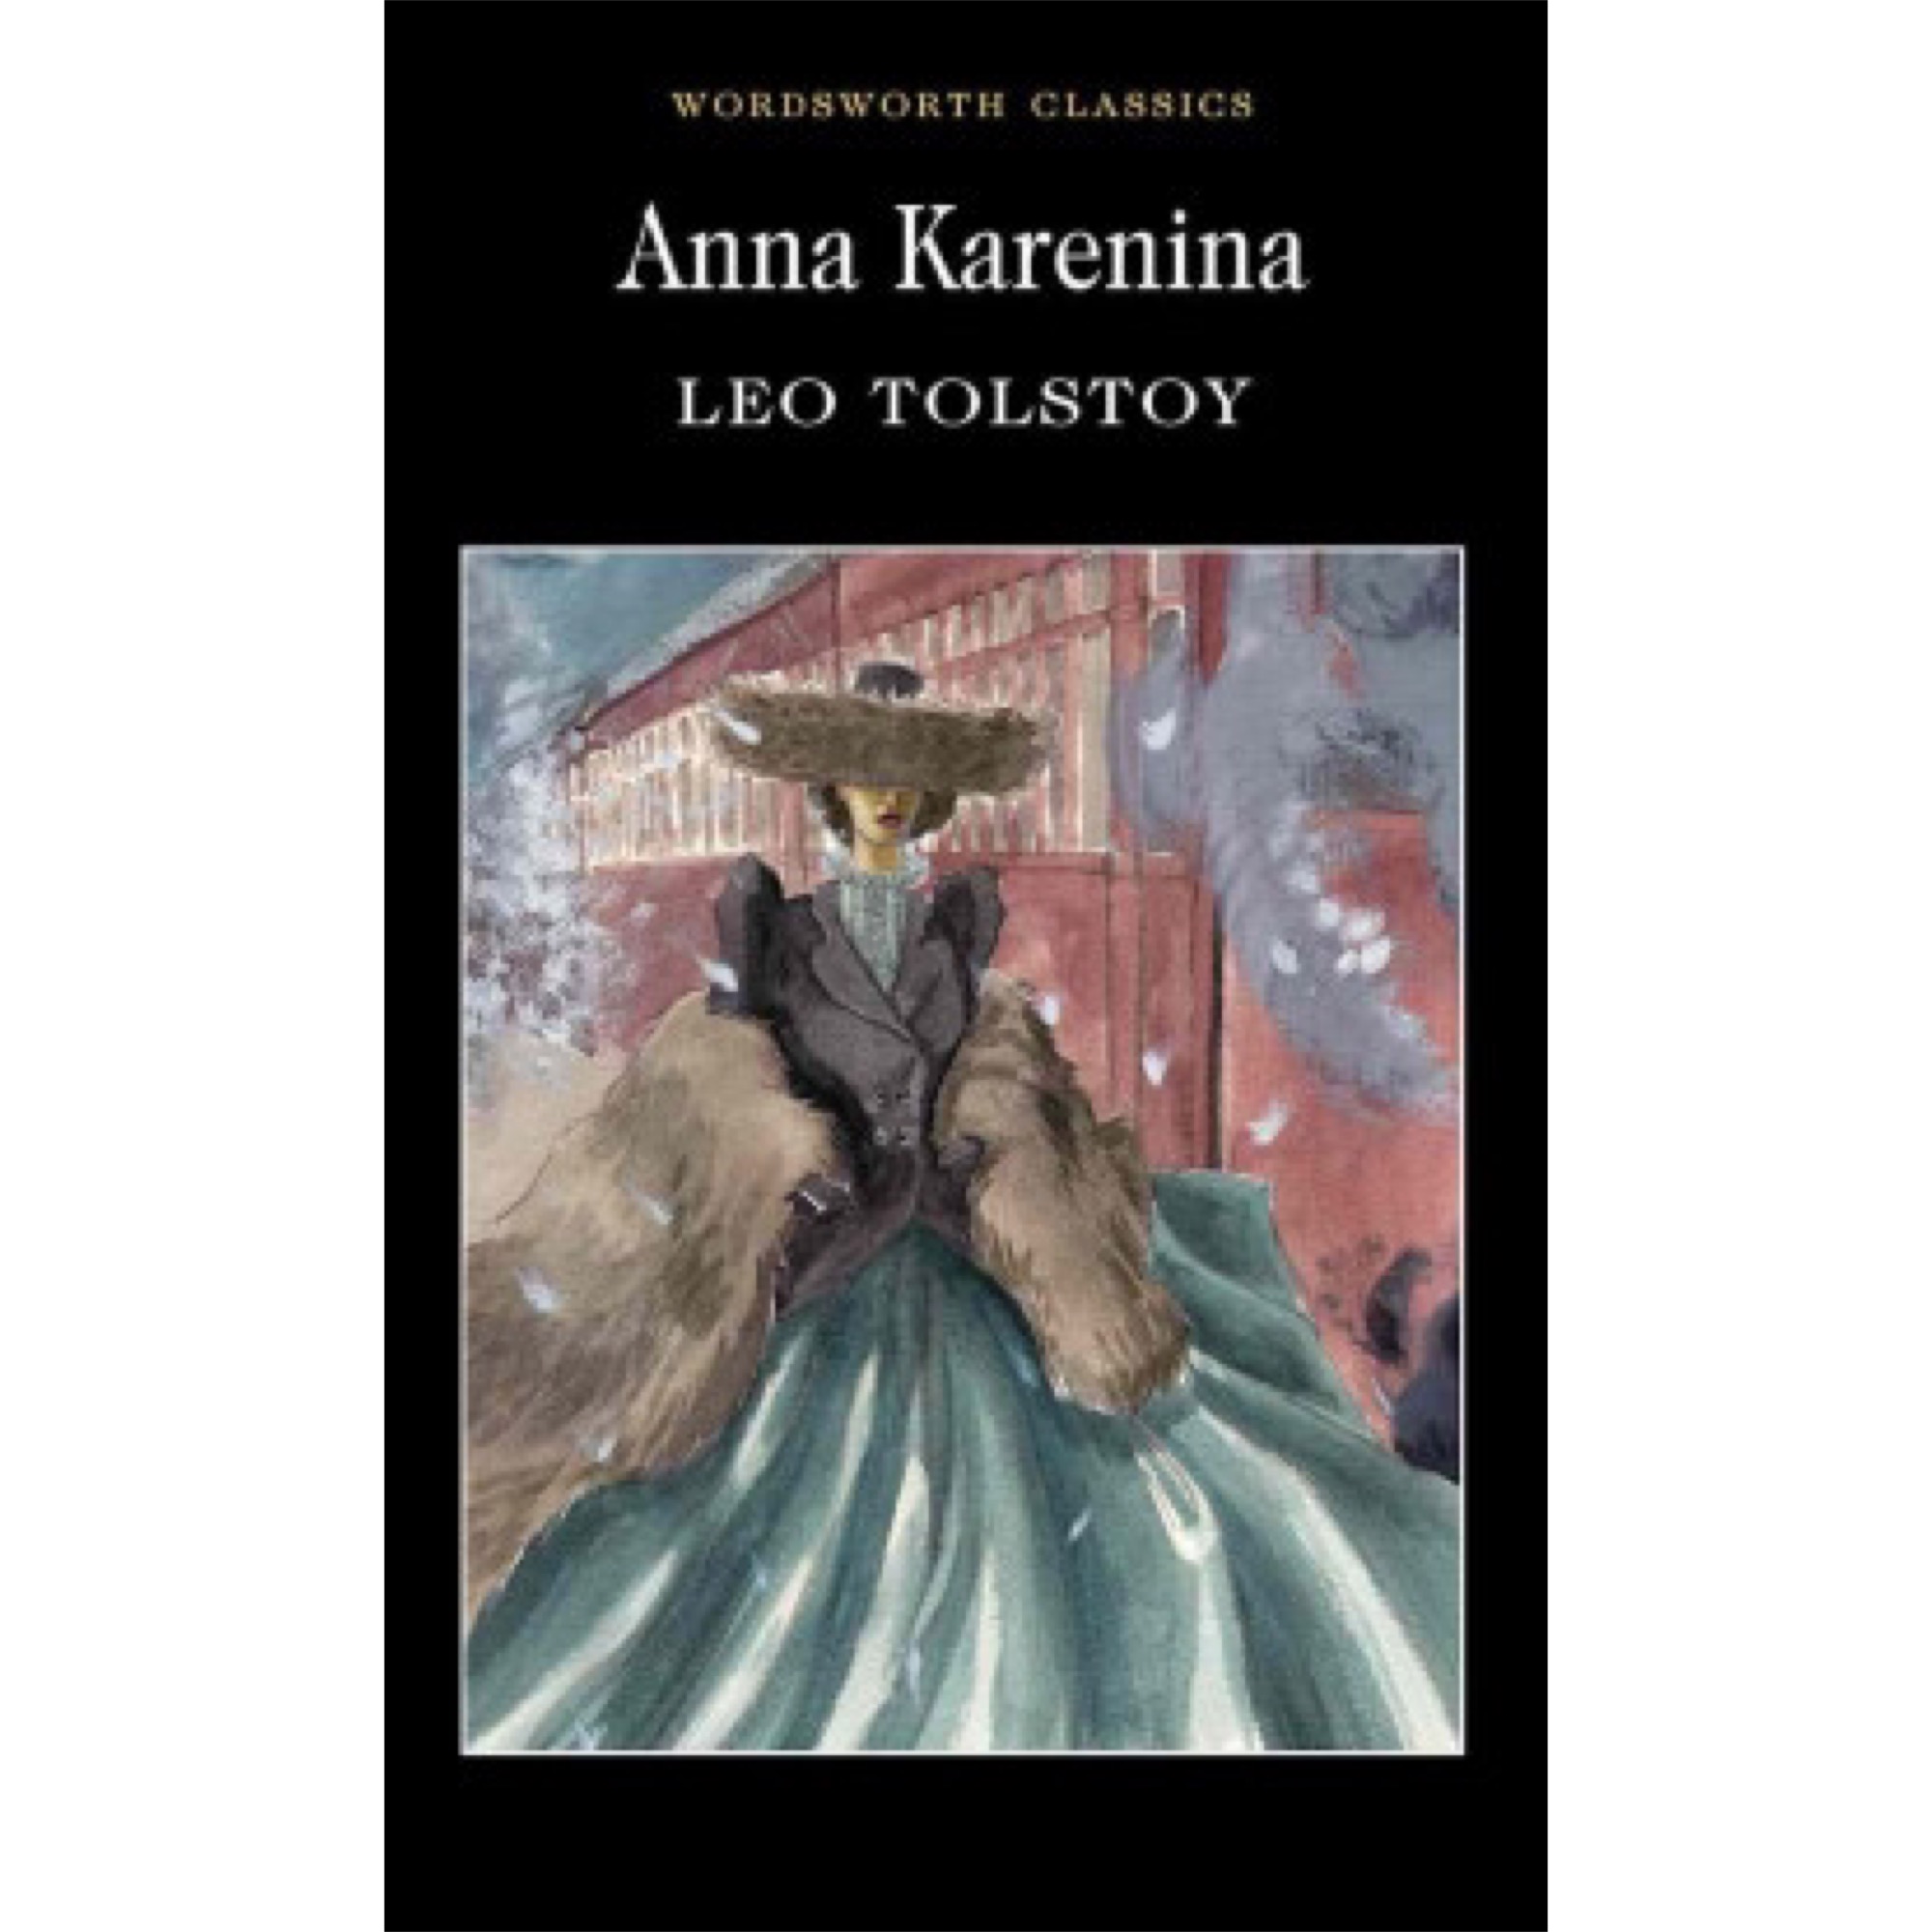 Книга анны смолиной. Tolstoy Leo "Anna Karenina".